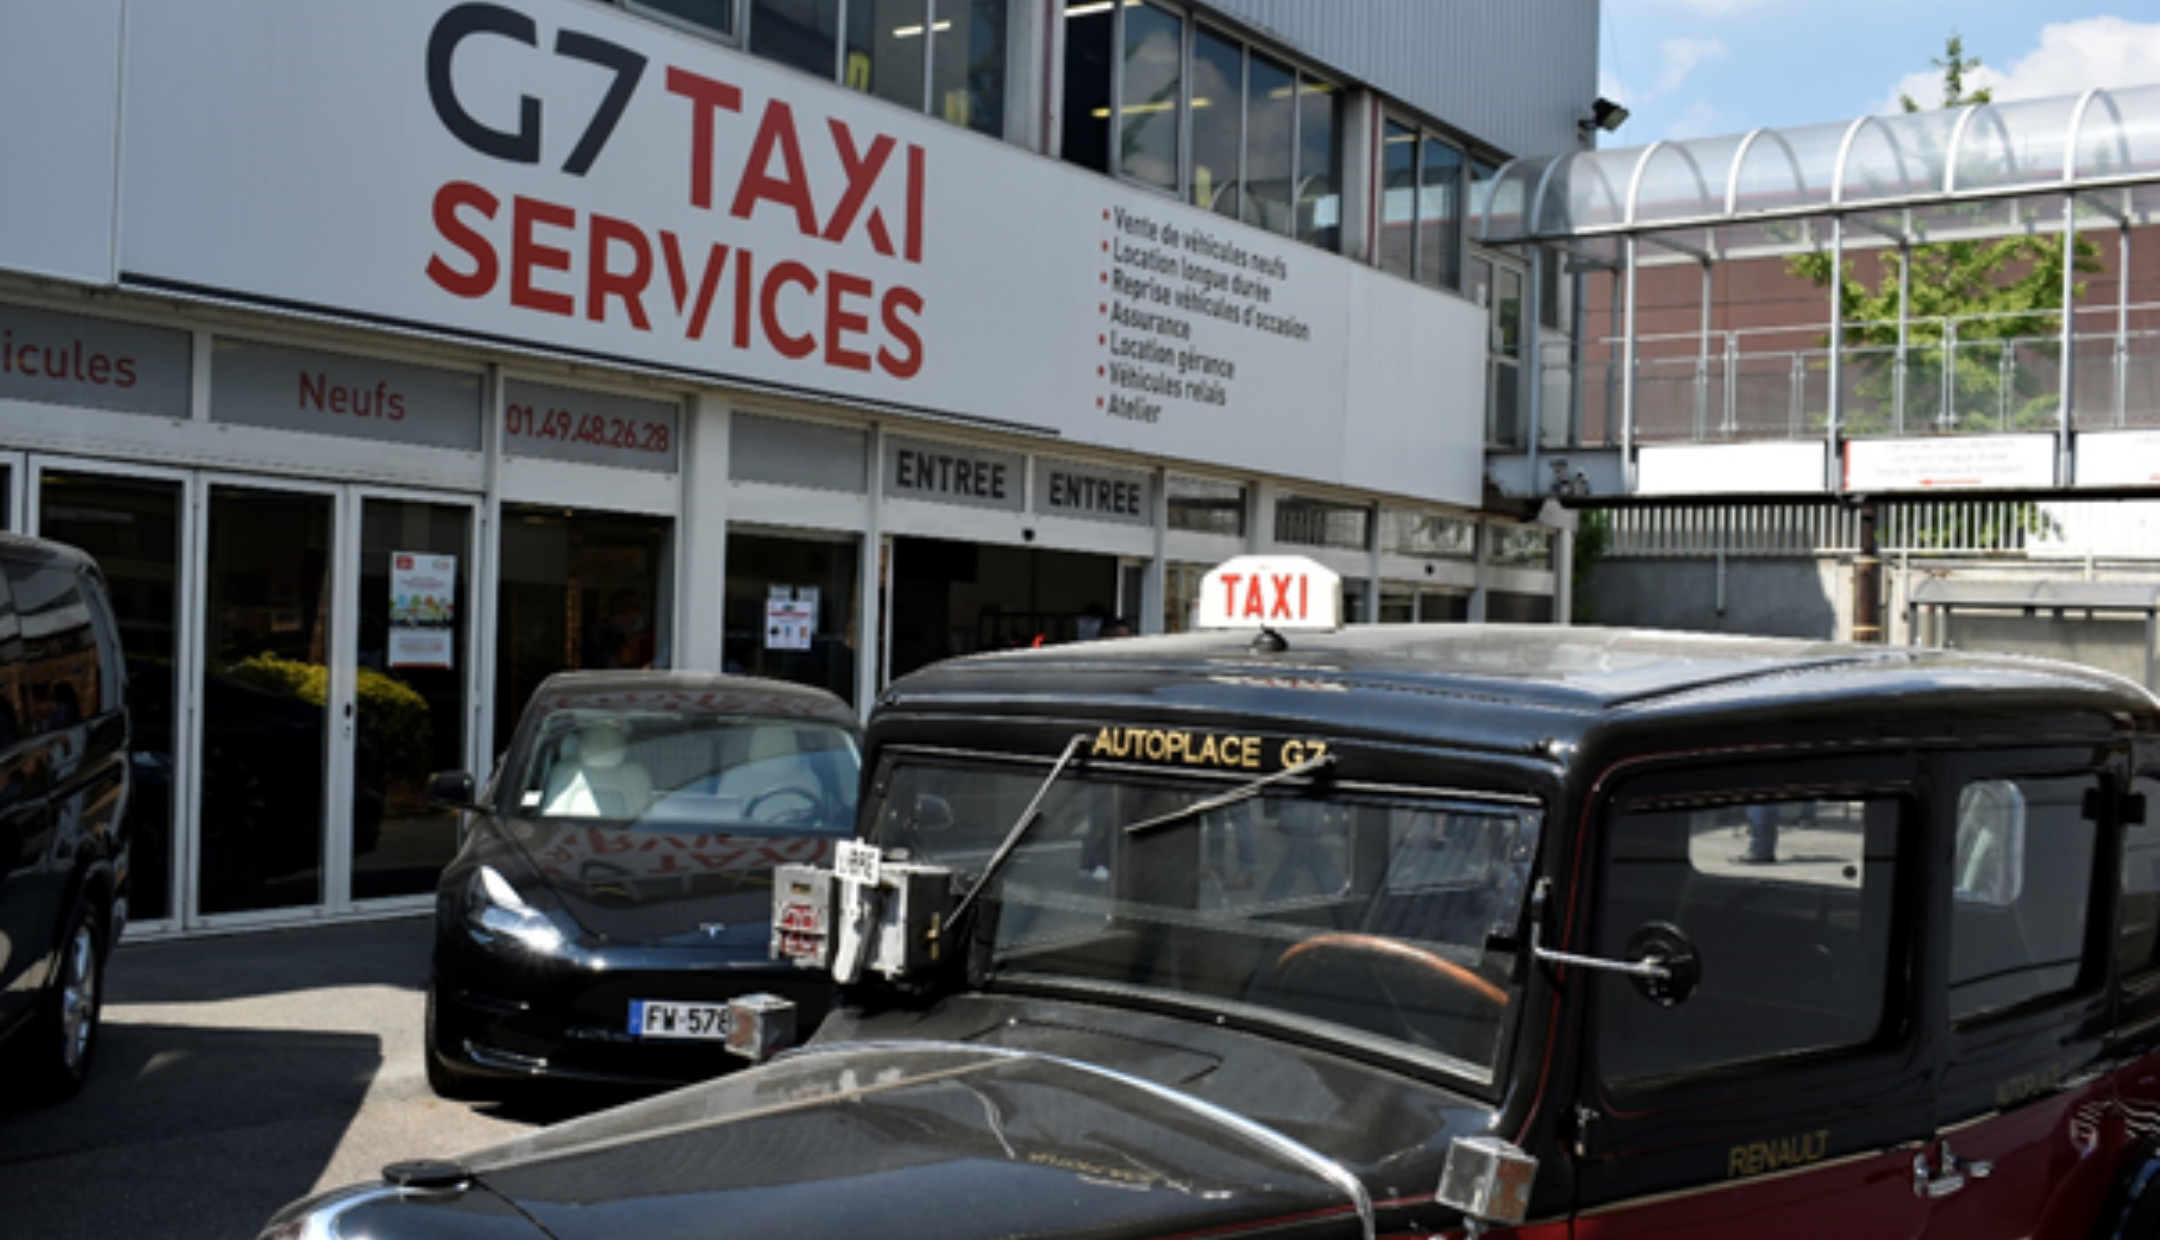 Journées portes ouvertes chez G7 Taxi Services